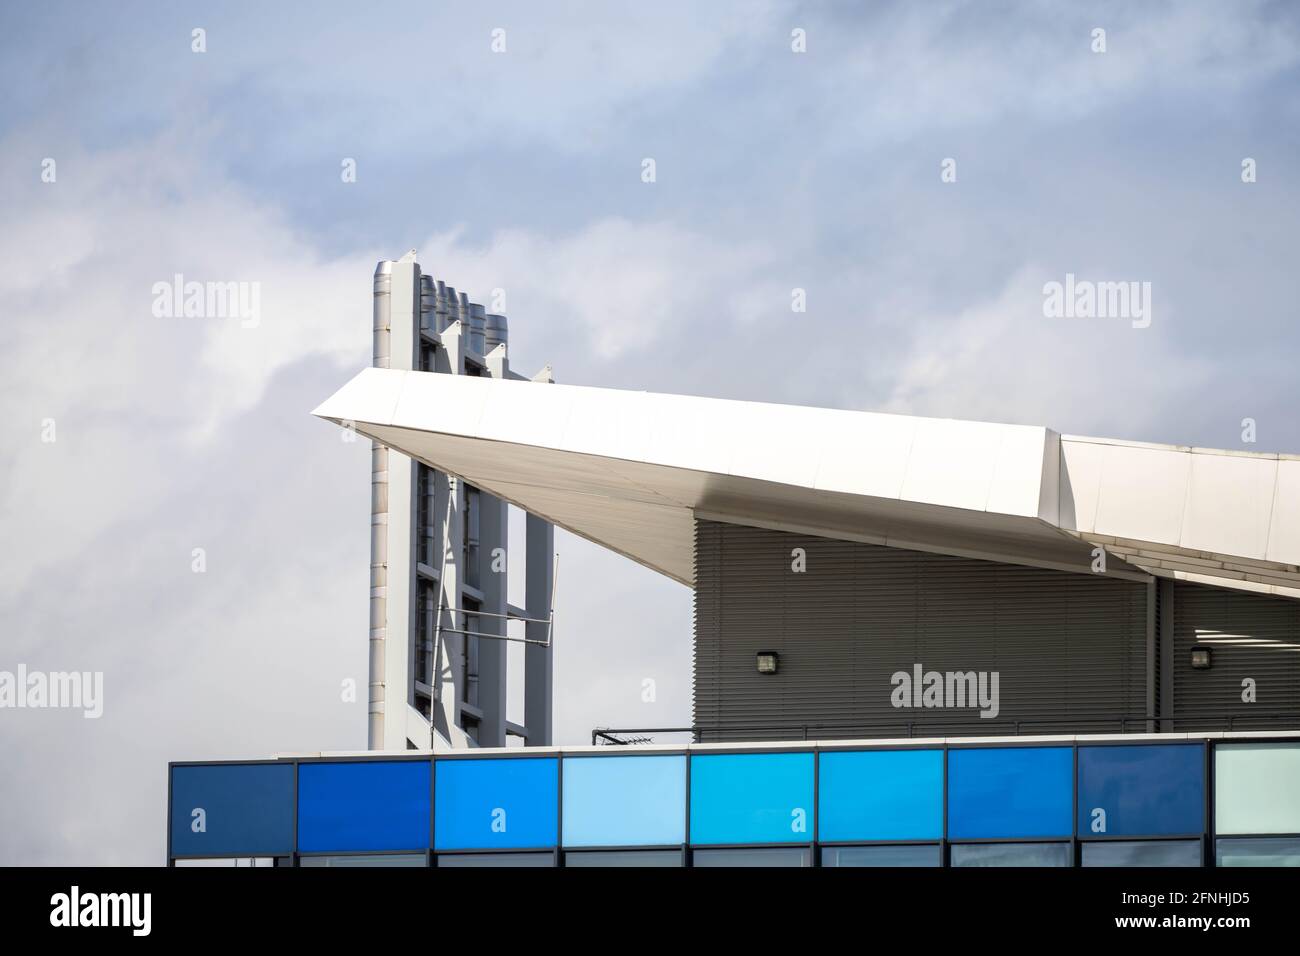 Moderne städtische Architektur in Blau- und Aqua-Bauweise, angewinkelte Dachlinie mit verchromten Edelstahlschornsteinen, die bis in den wolkenblauen Himmel reichen. Stockfoto